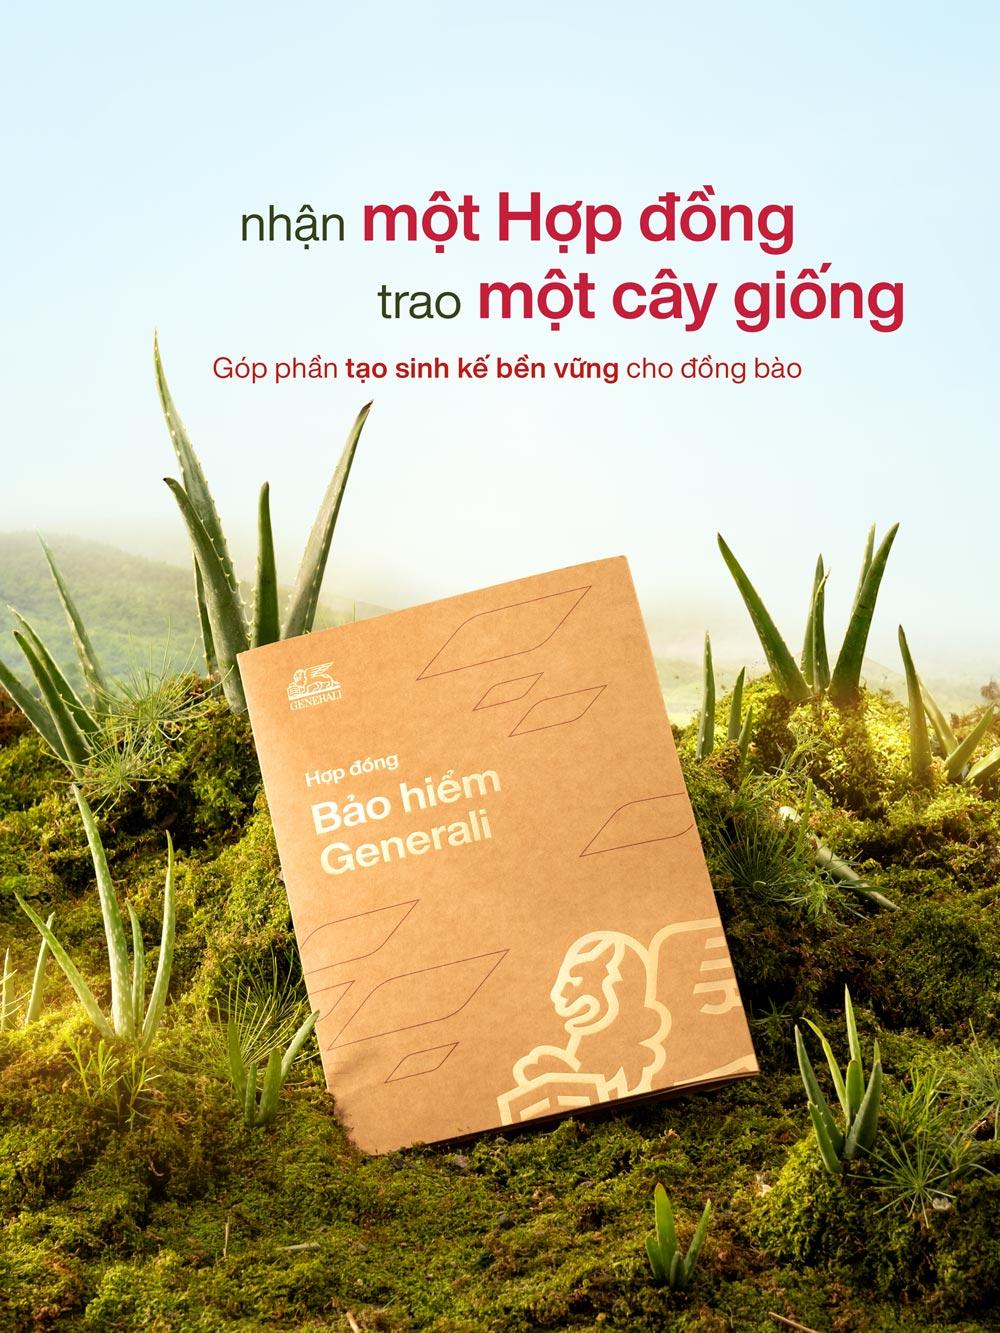 Generali Việt Nam tự hào giới thiệu bộ Hợp đồng Bảo hiểm phiên bản thân thiện với môi trường.